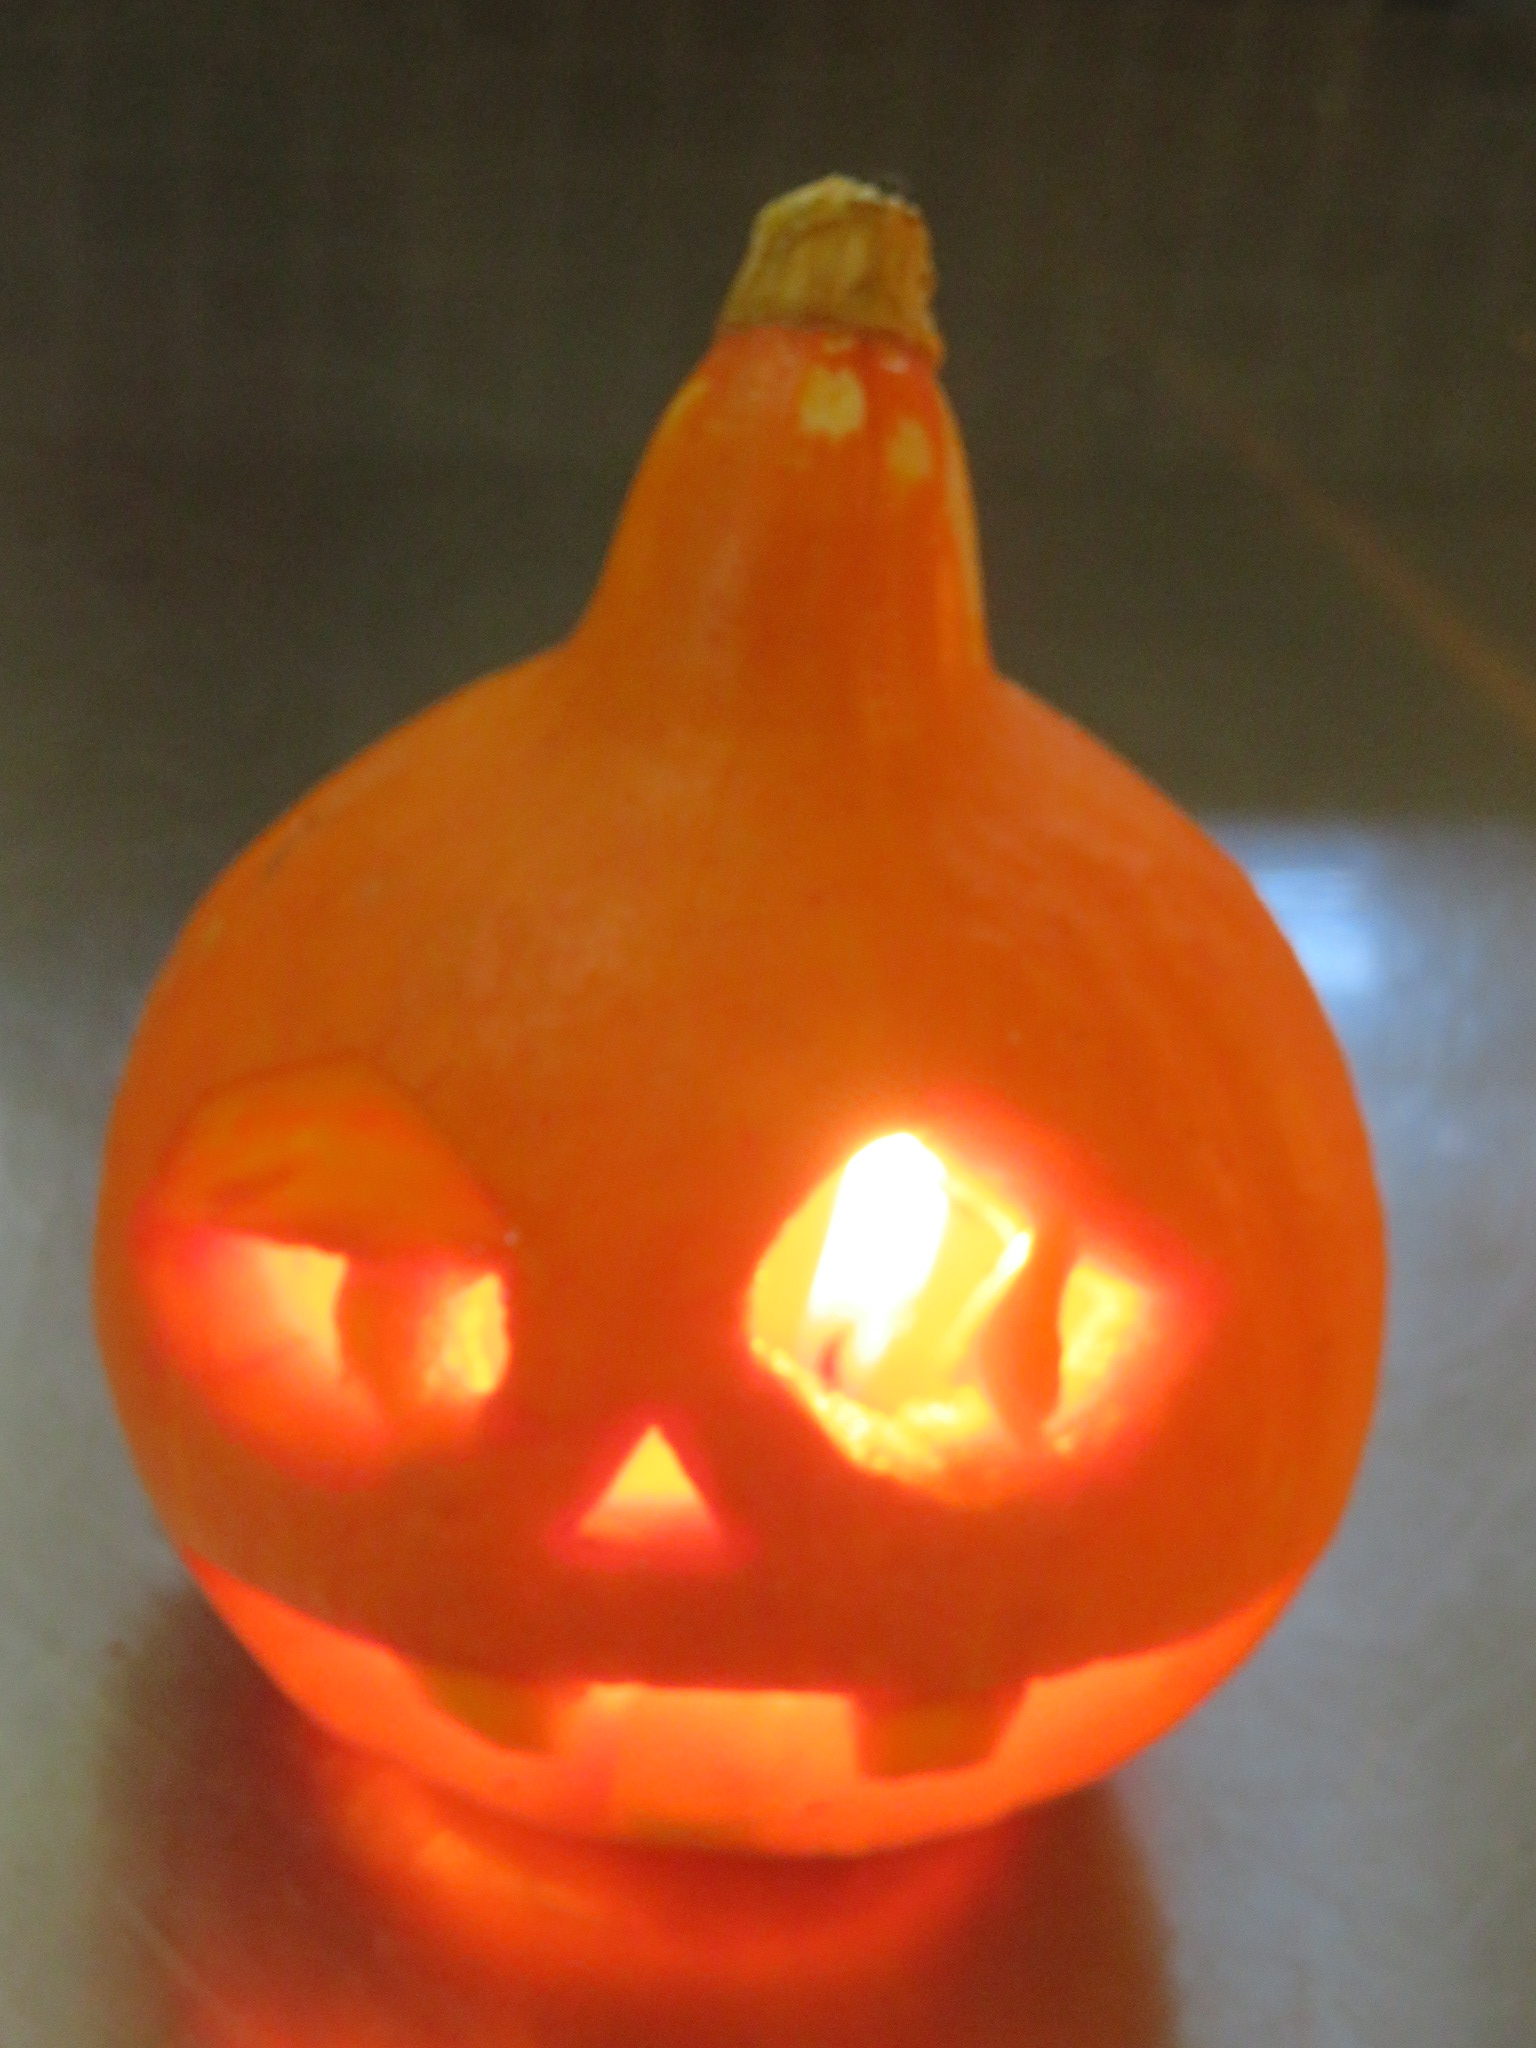 【活動報告】かぼちゃランタン作り体験